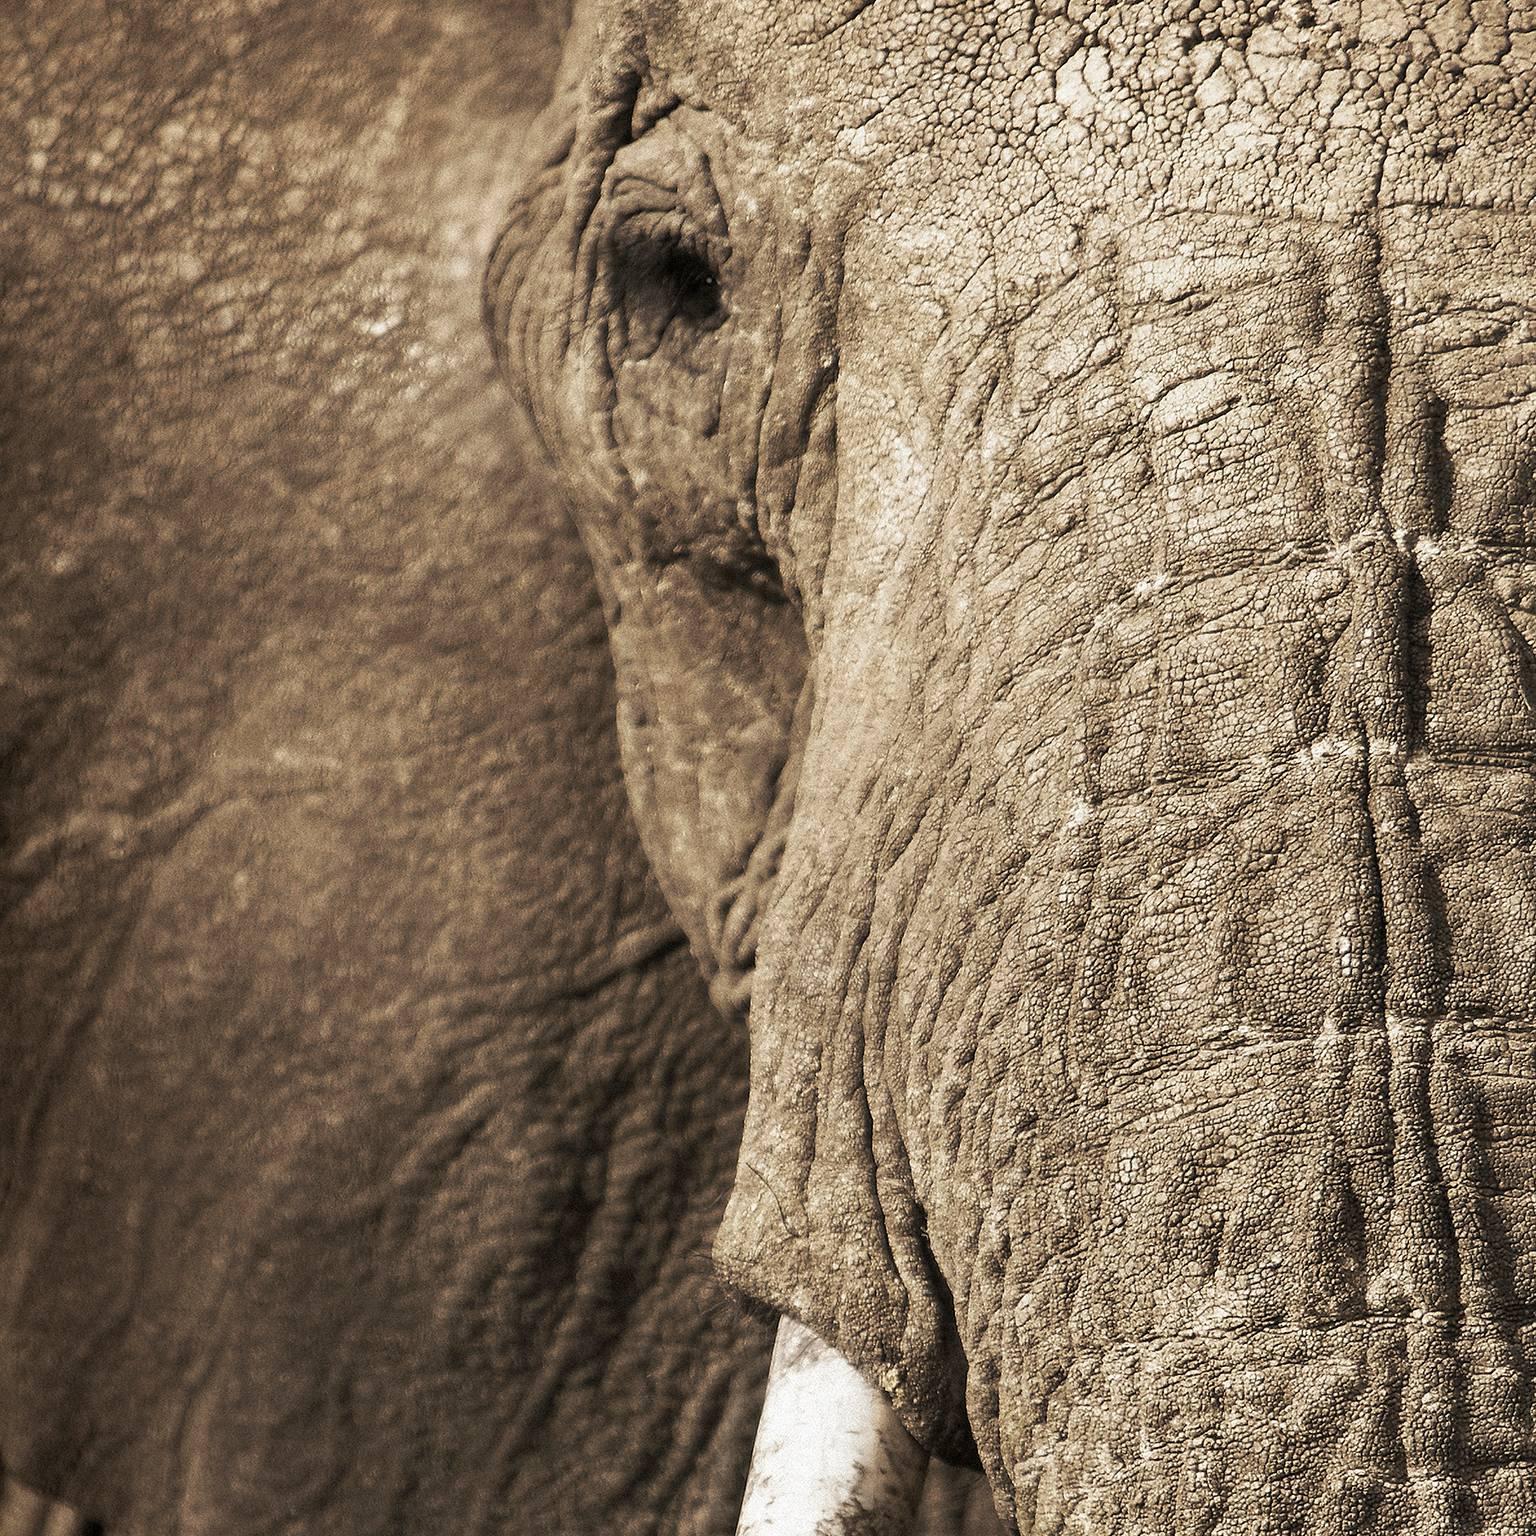 Elephant 4 - Photograph by Chris Gordaneer